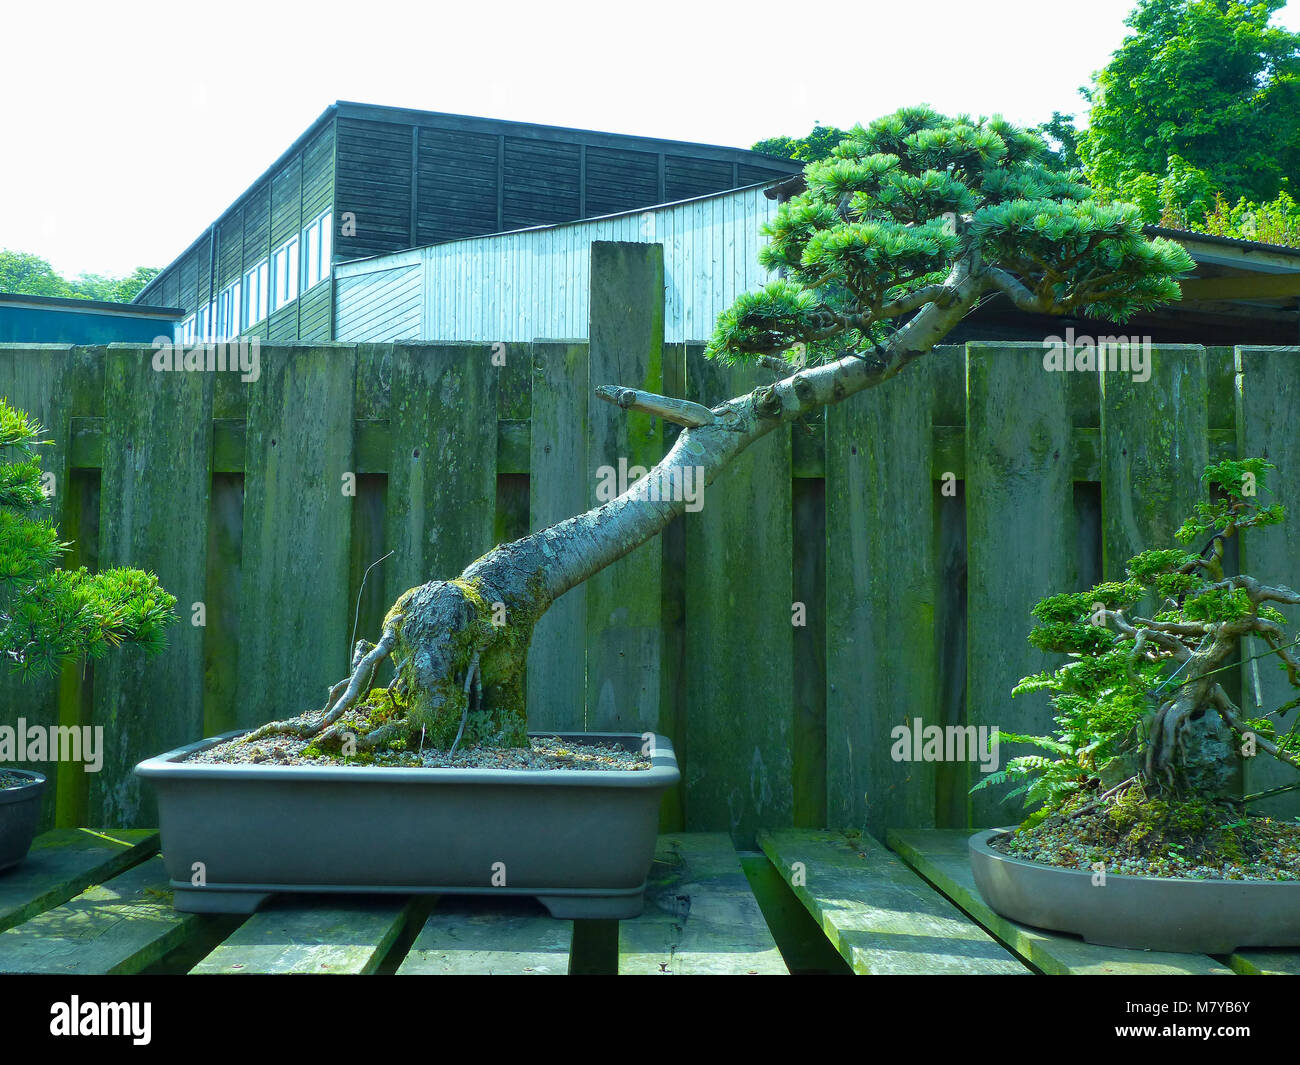 Spécimen remarquable verticale informelle Lonicera bonsaï sur l'affichage dans un jardin dans les amateurs de Bangor Northern Ireland Banque D'Images